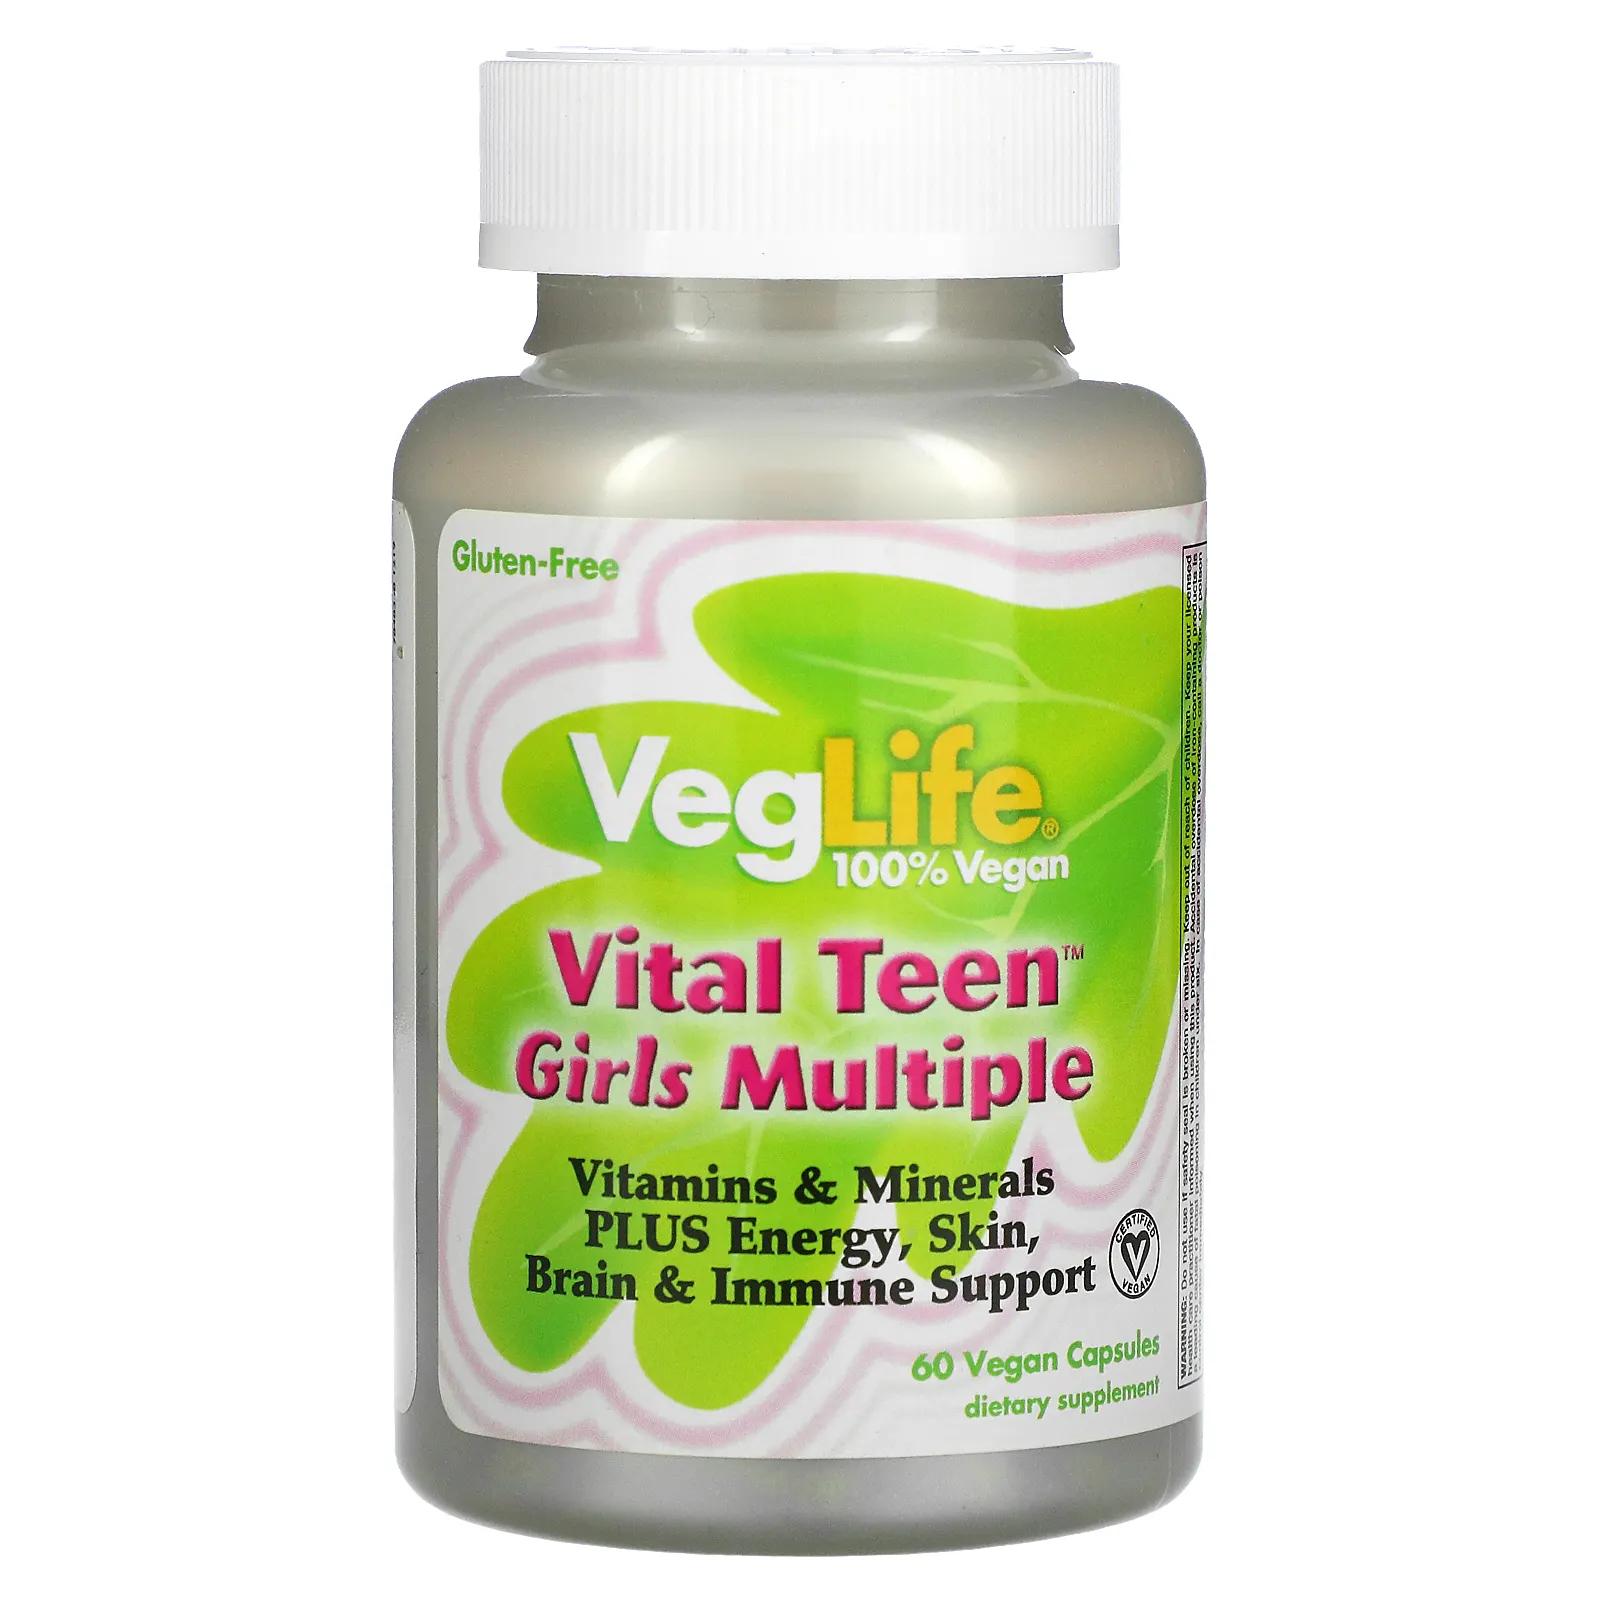 VegLife Vital Teen витаминный комплекс для девочек 60 вегетарианских капсул